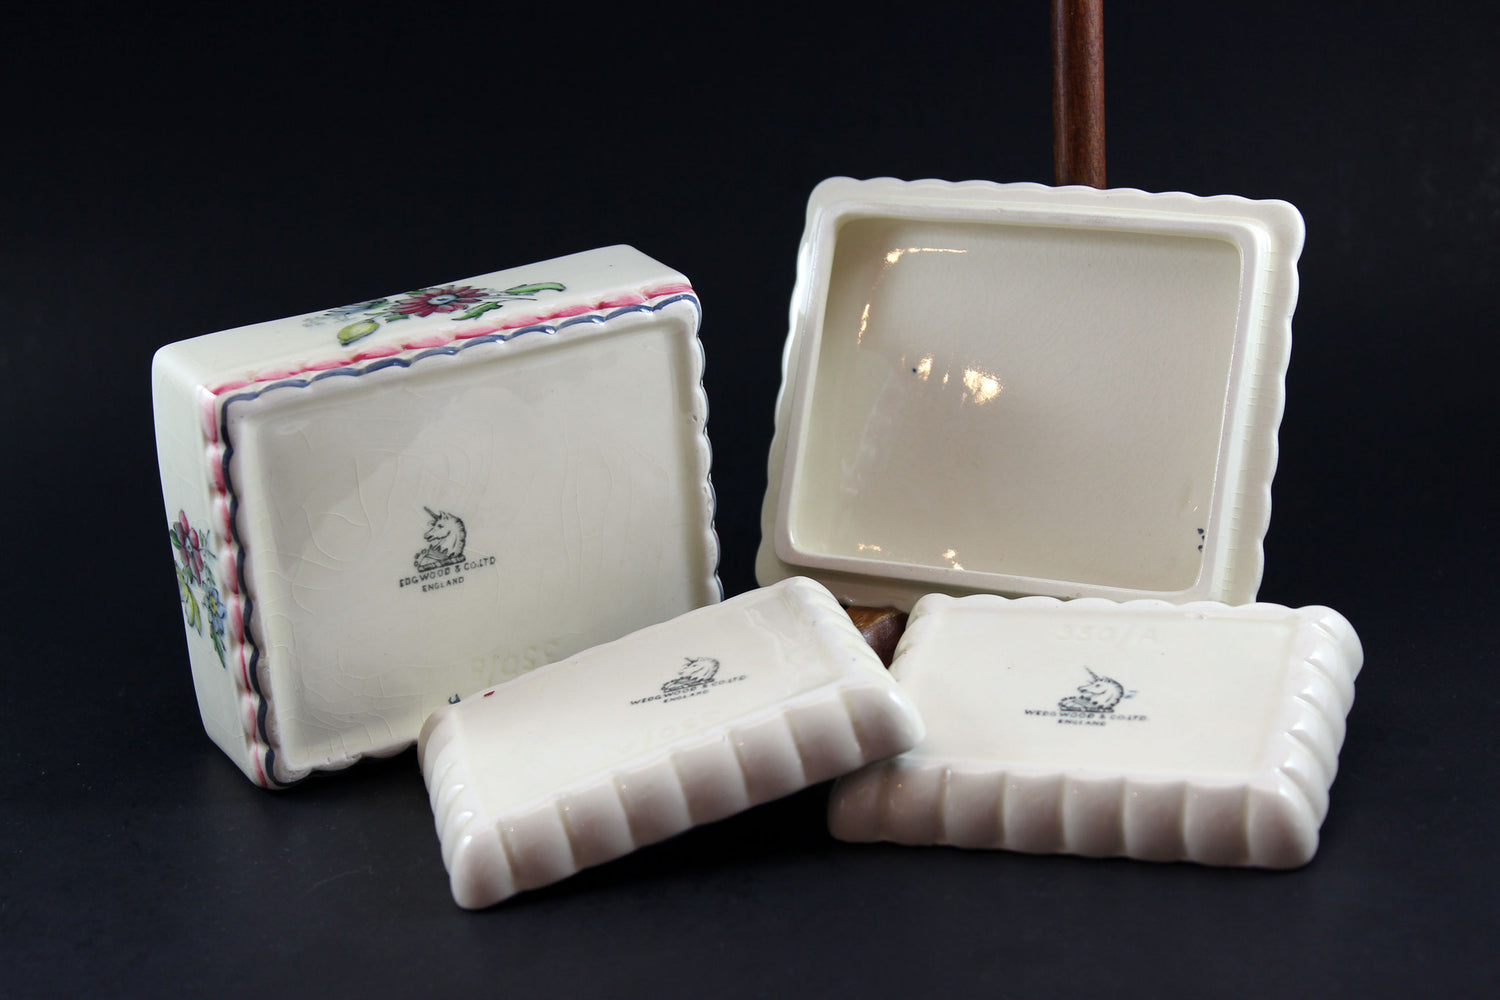 Wedgwood &amp; Co. Ltd.-Vintage Porcelain Trinket Box